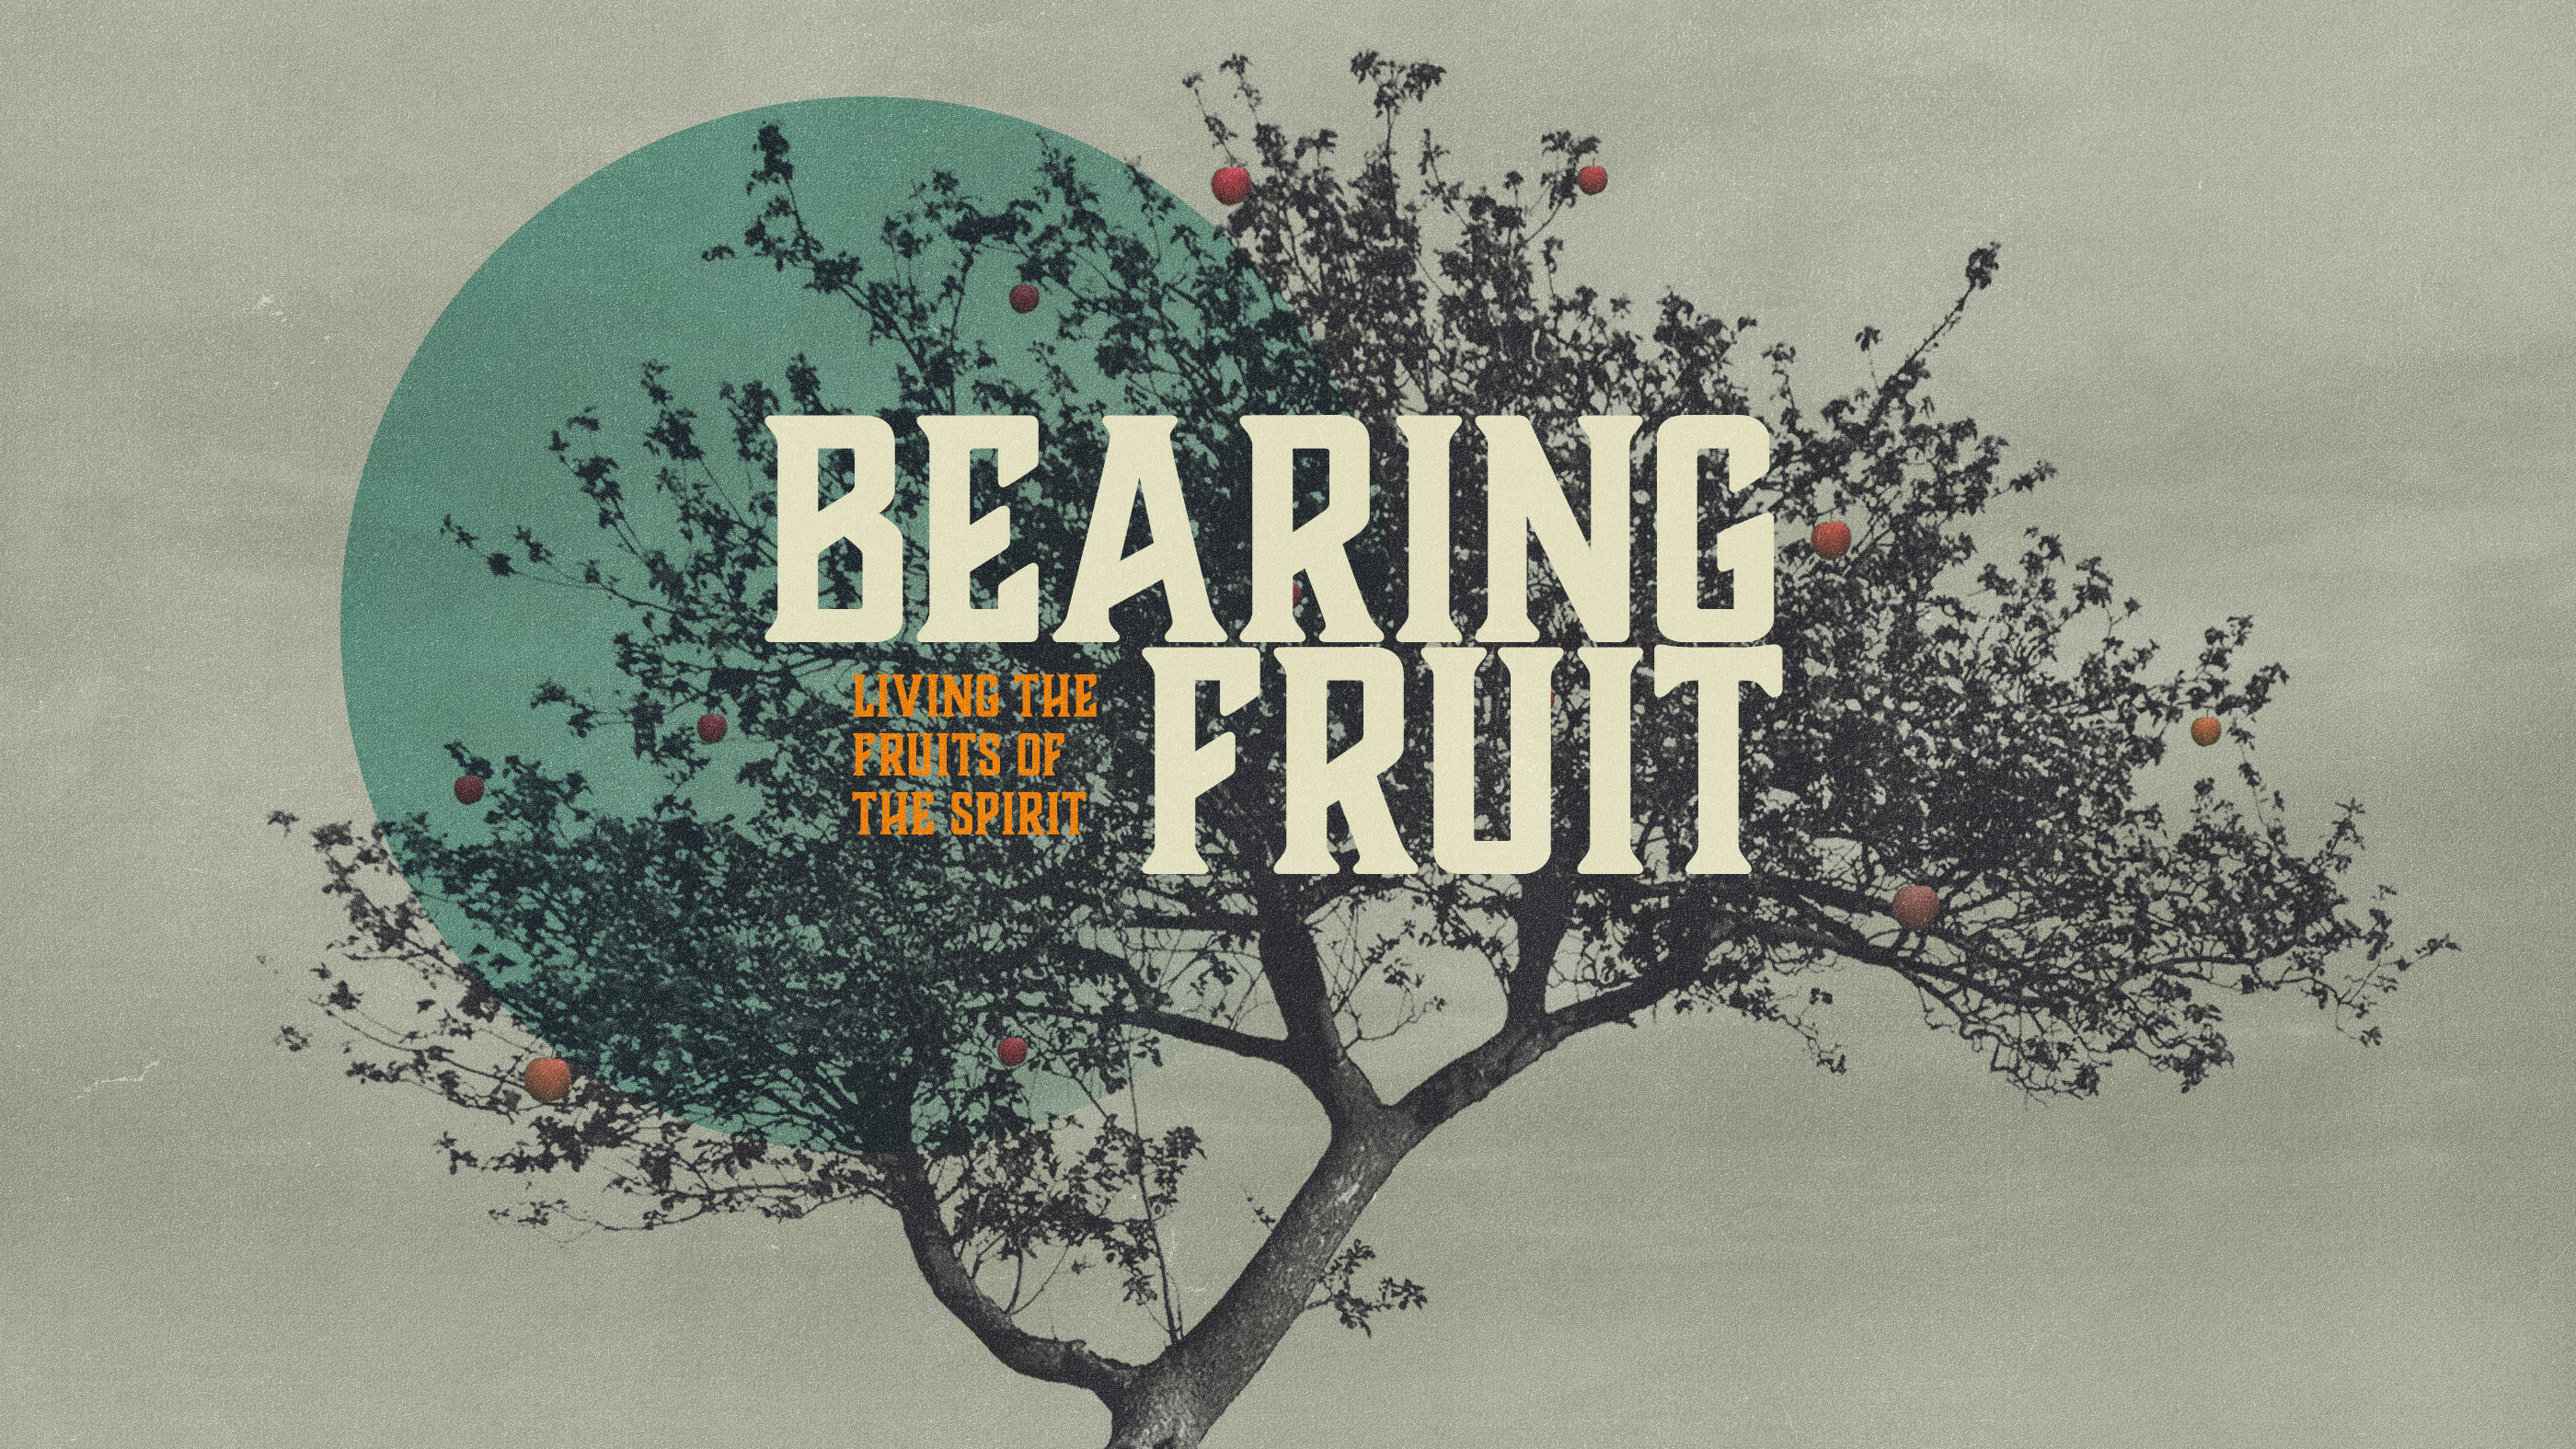 bearing fruit